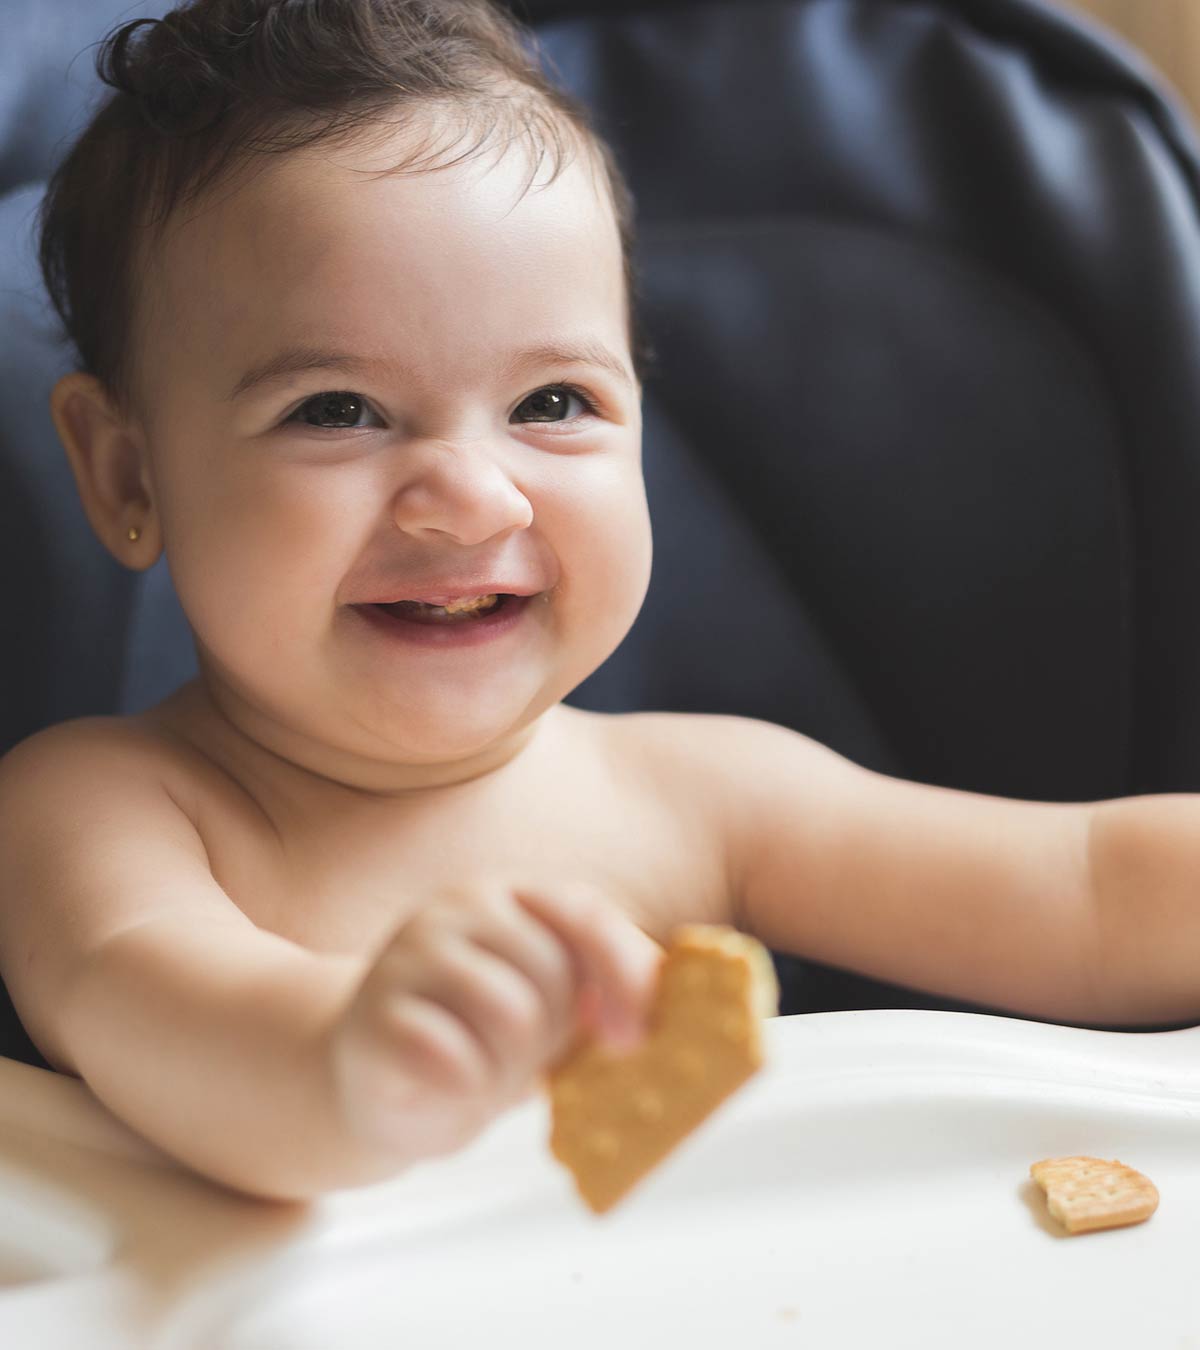 婴儿饼干:安全健康的自制食谱